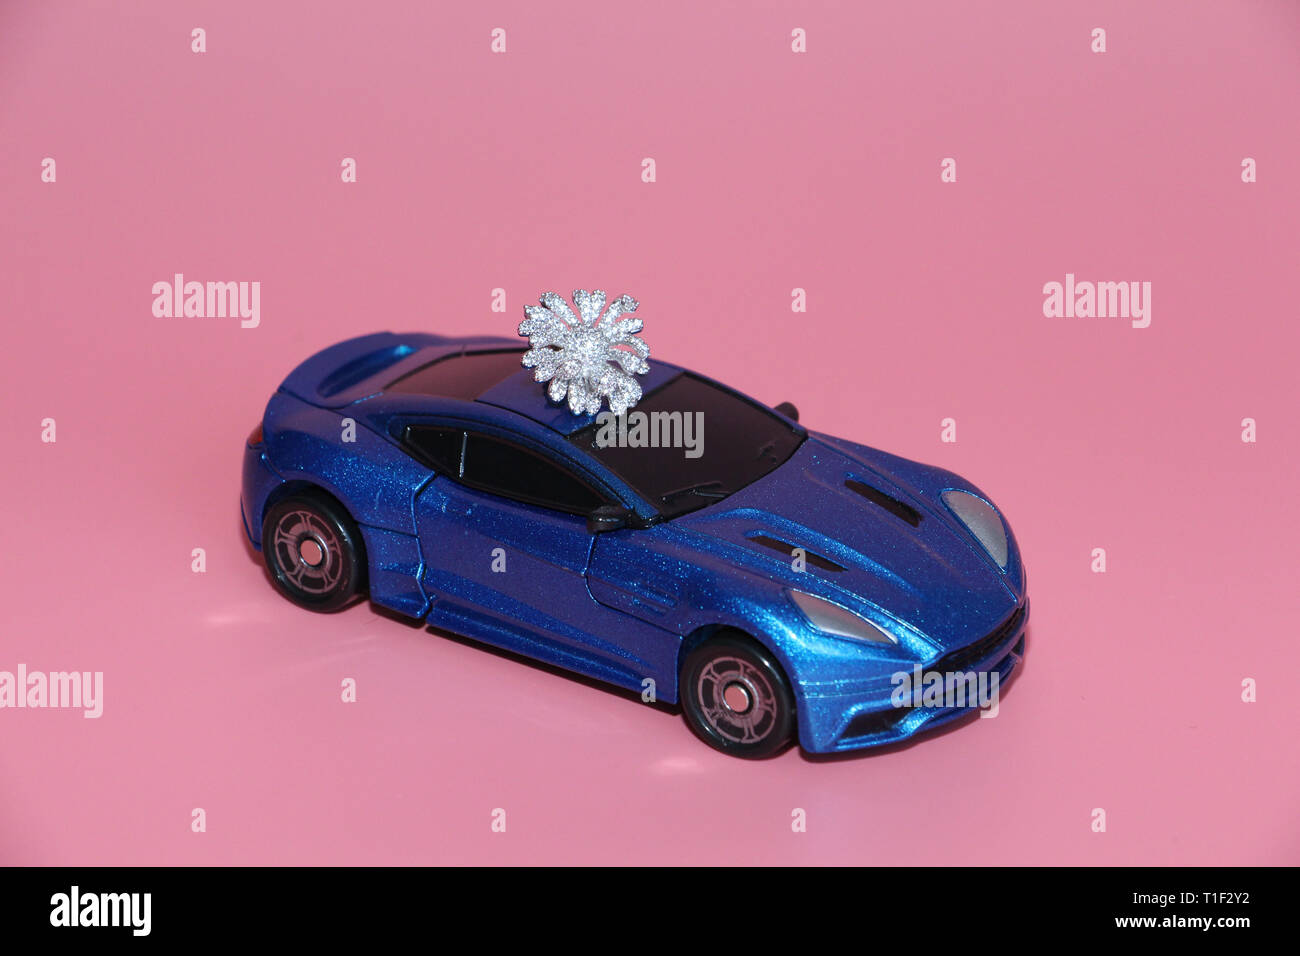 Die blauen Sportwagen trägt eine Crystal Blume. Die Gabe liegt auf dem Dach des Autos. Rosa Hintergrund. Spielzeug für Kinder. Es gibt keine Menschen. Stockfoto